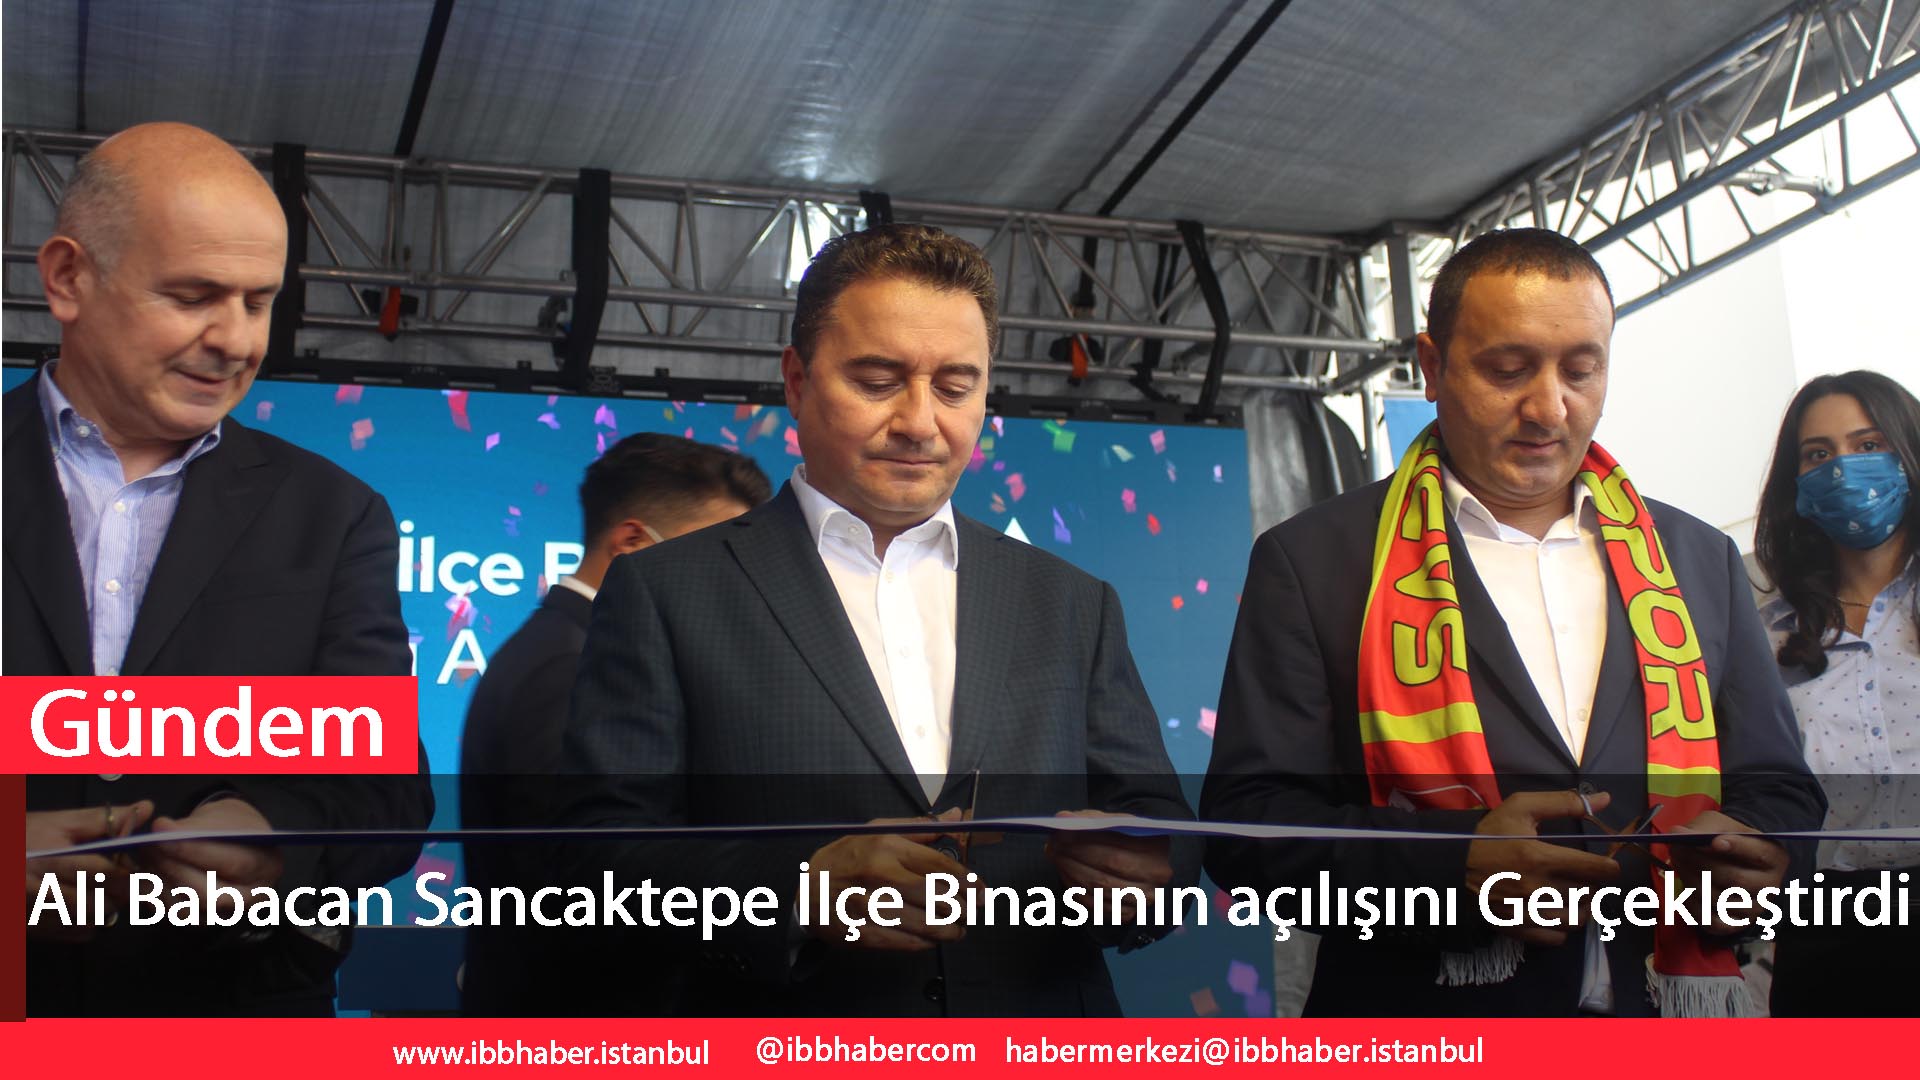 Ali Babacan Sancaktepe İlçe Binasının açılışını Gerçekleştirdi